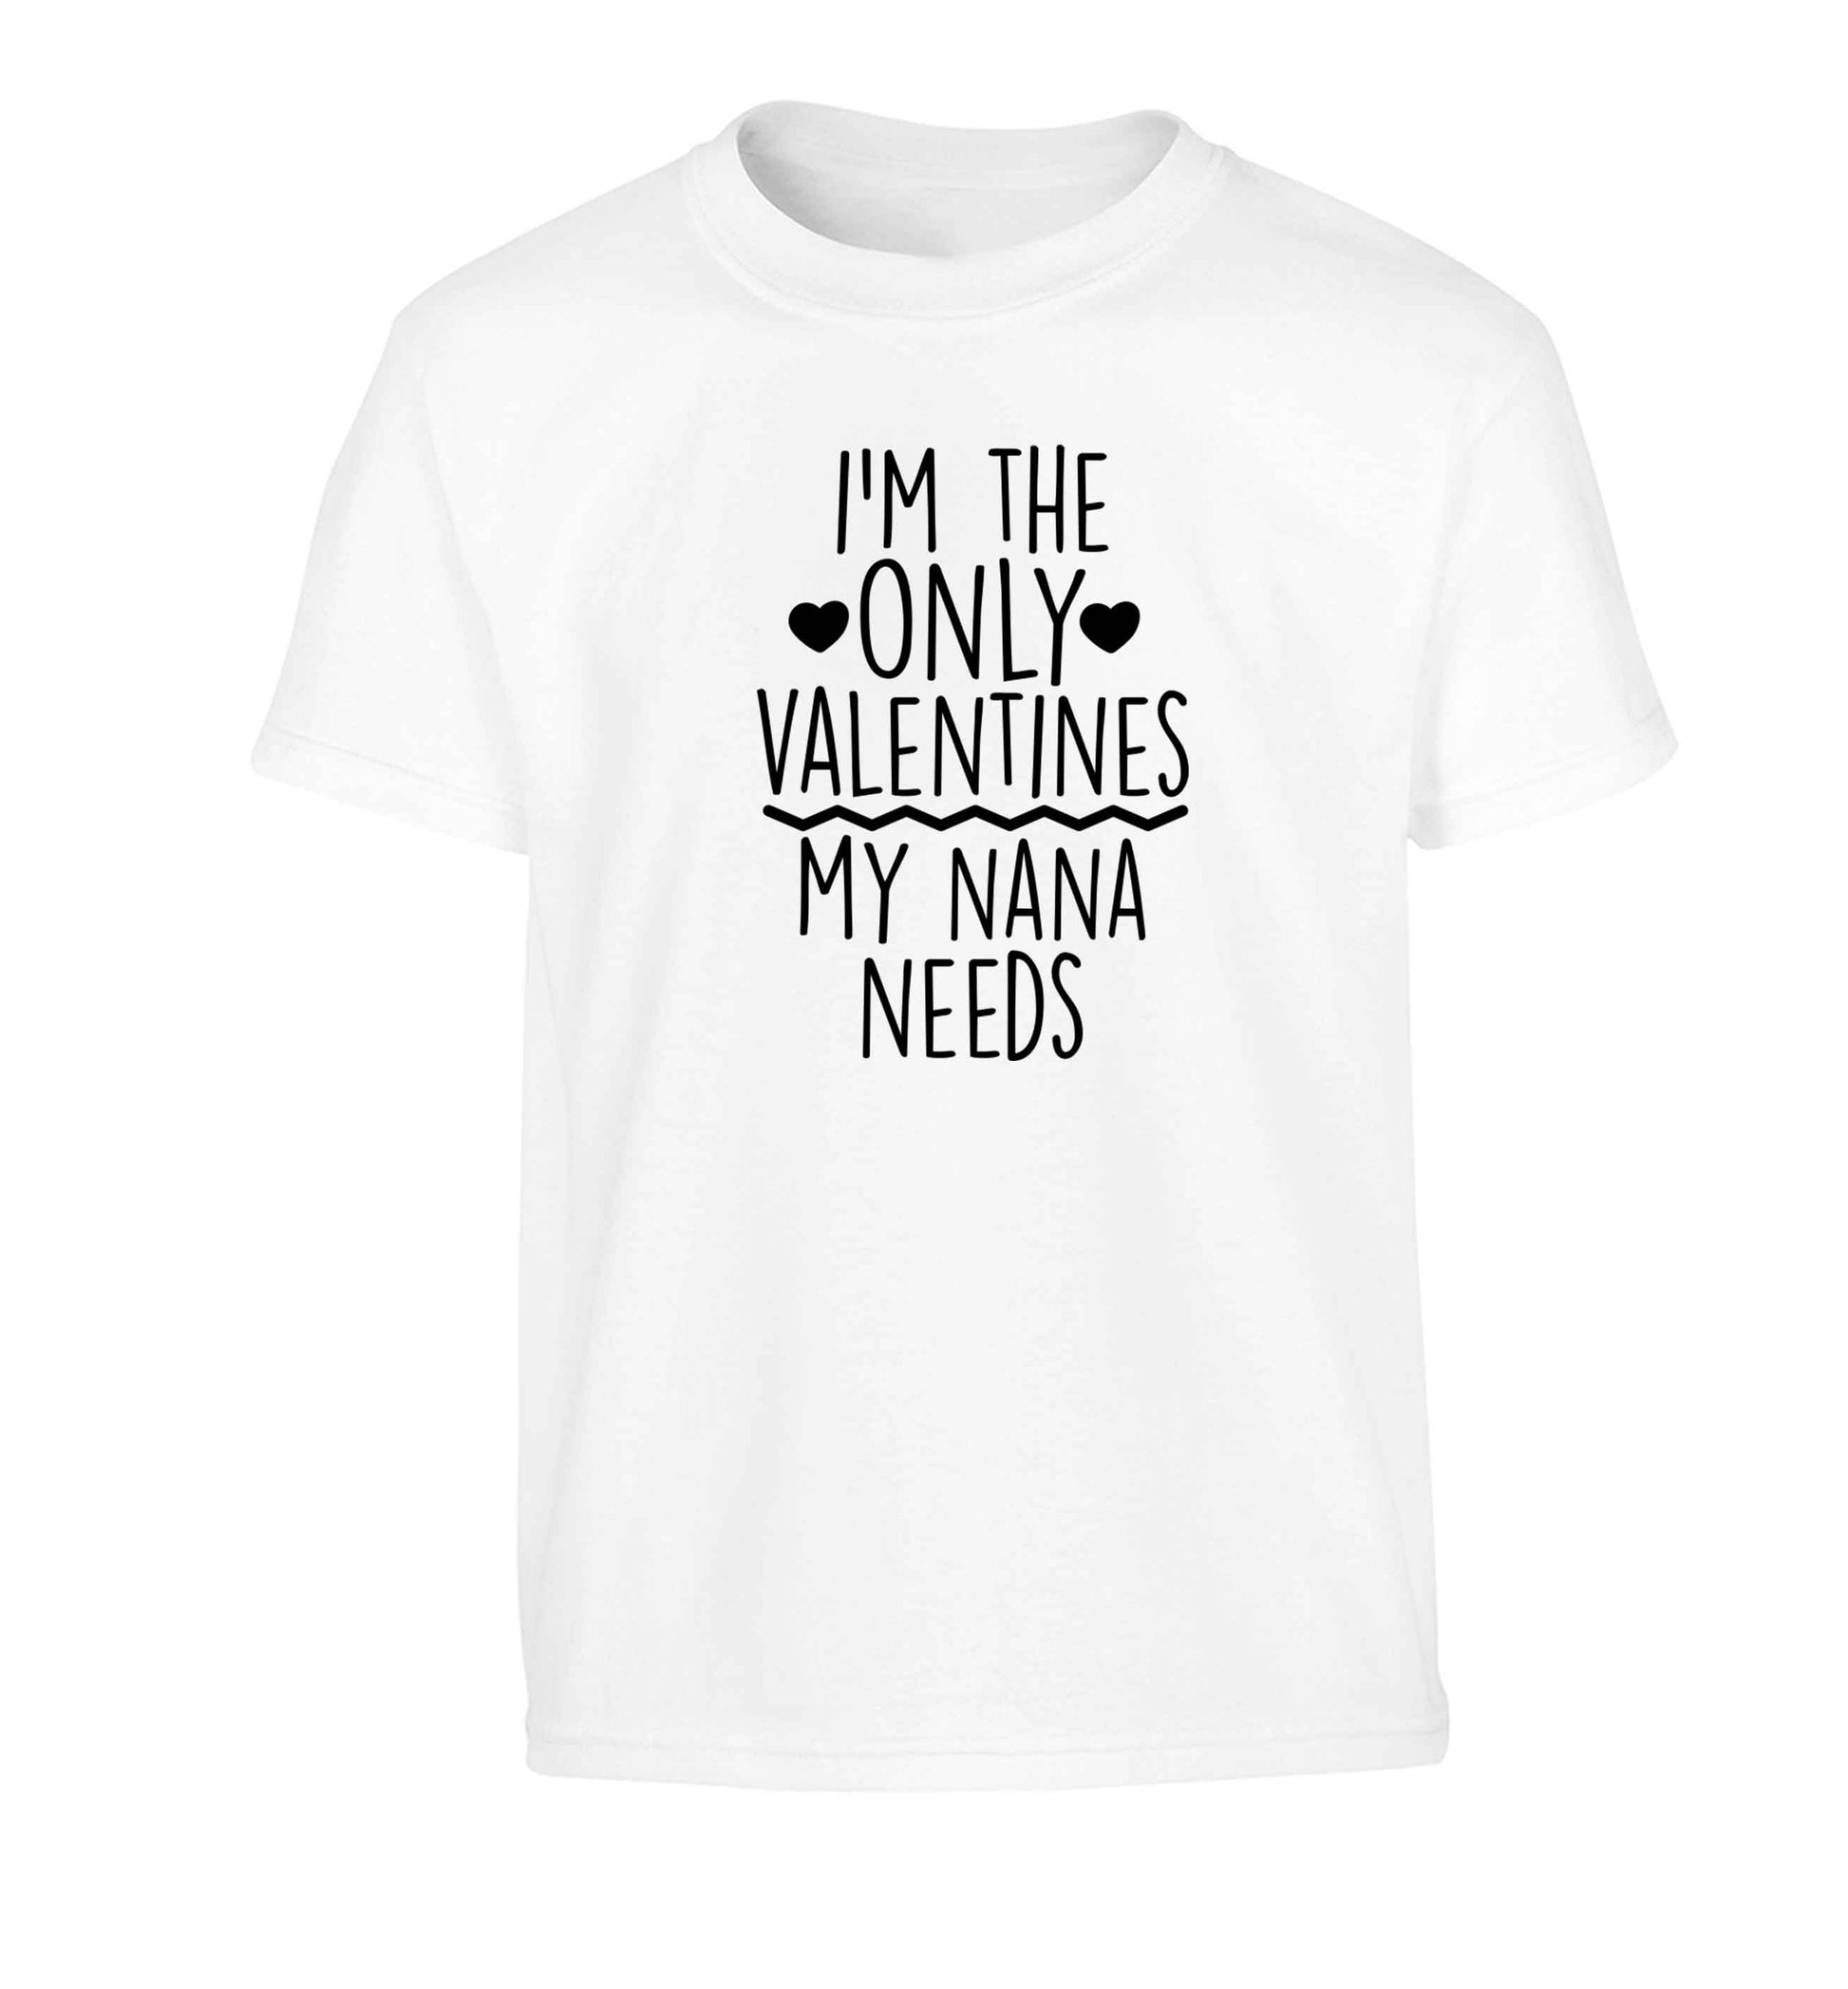 I'm the only valentines my nana needs Children's white Tshirt 12-13 Years